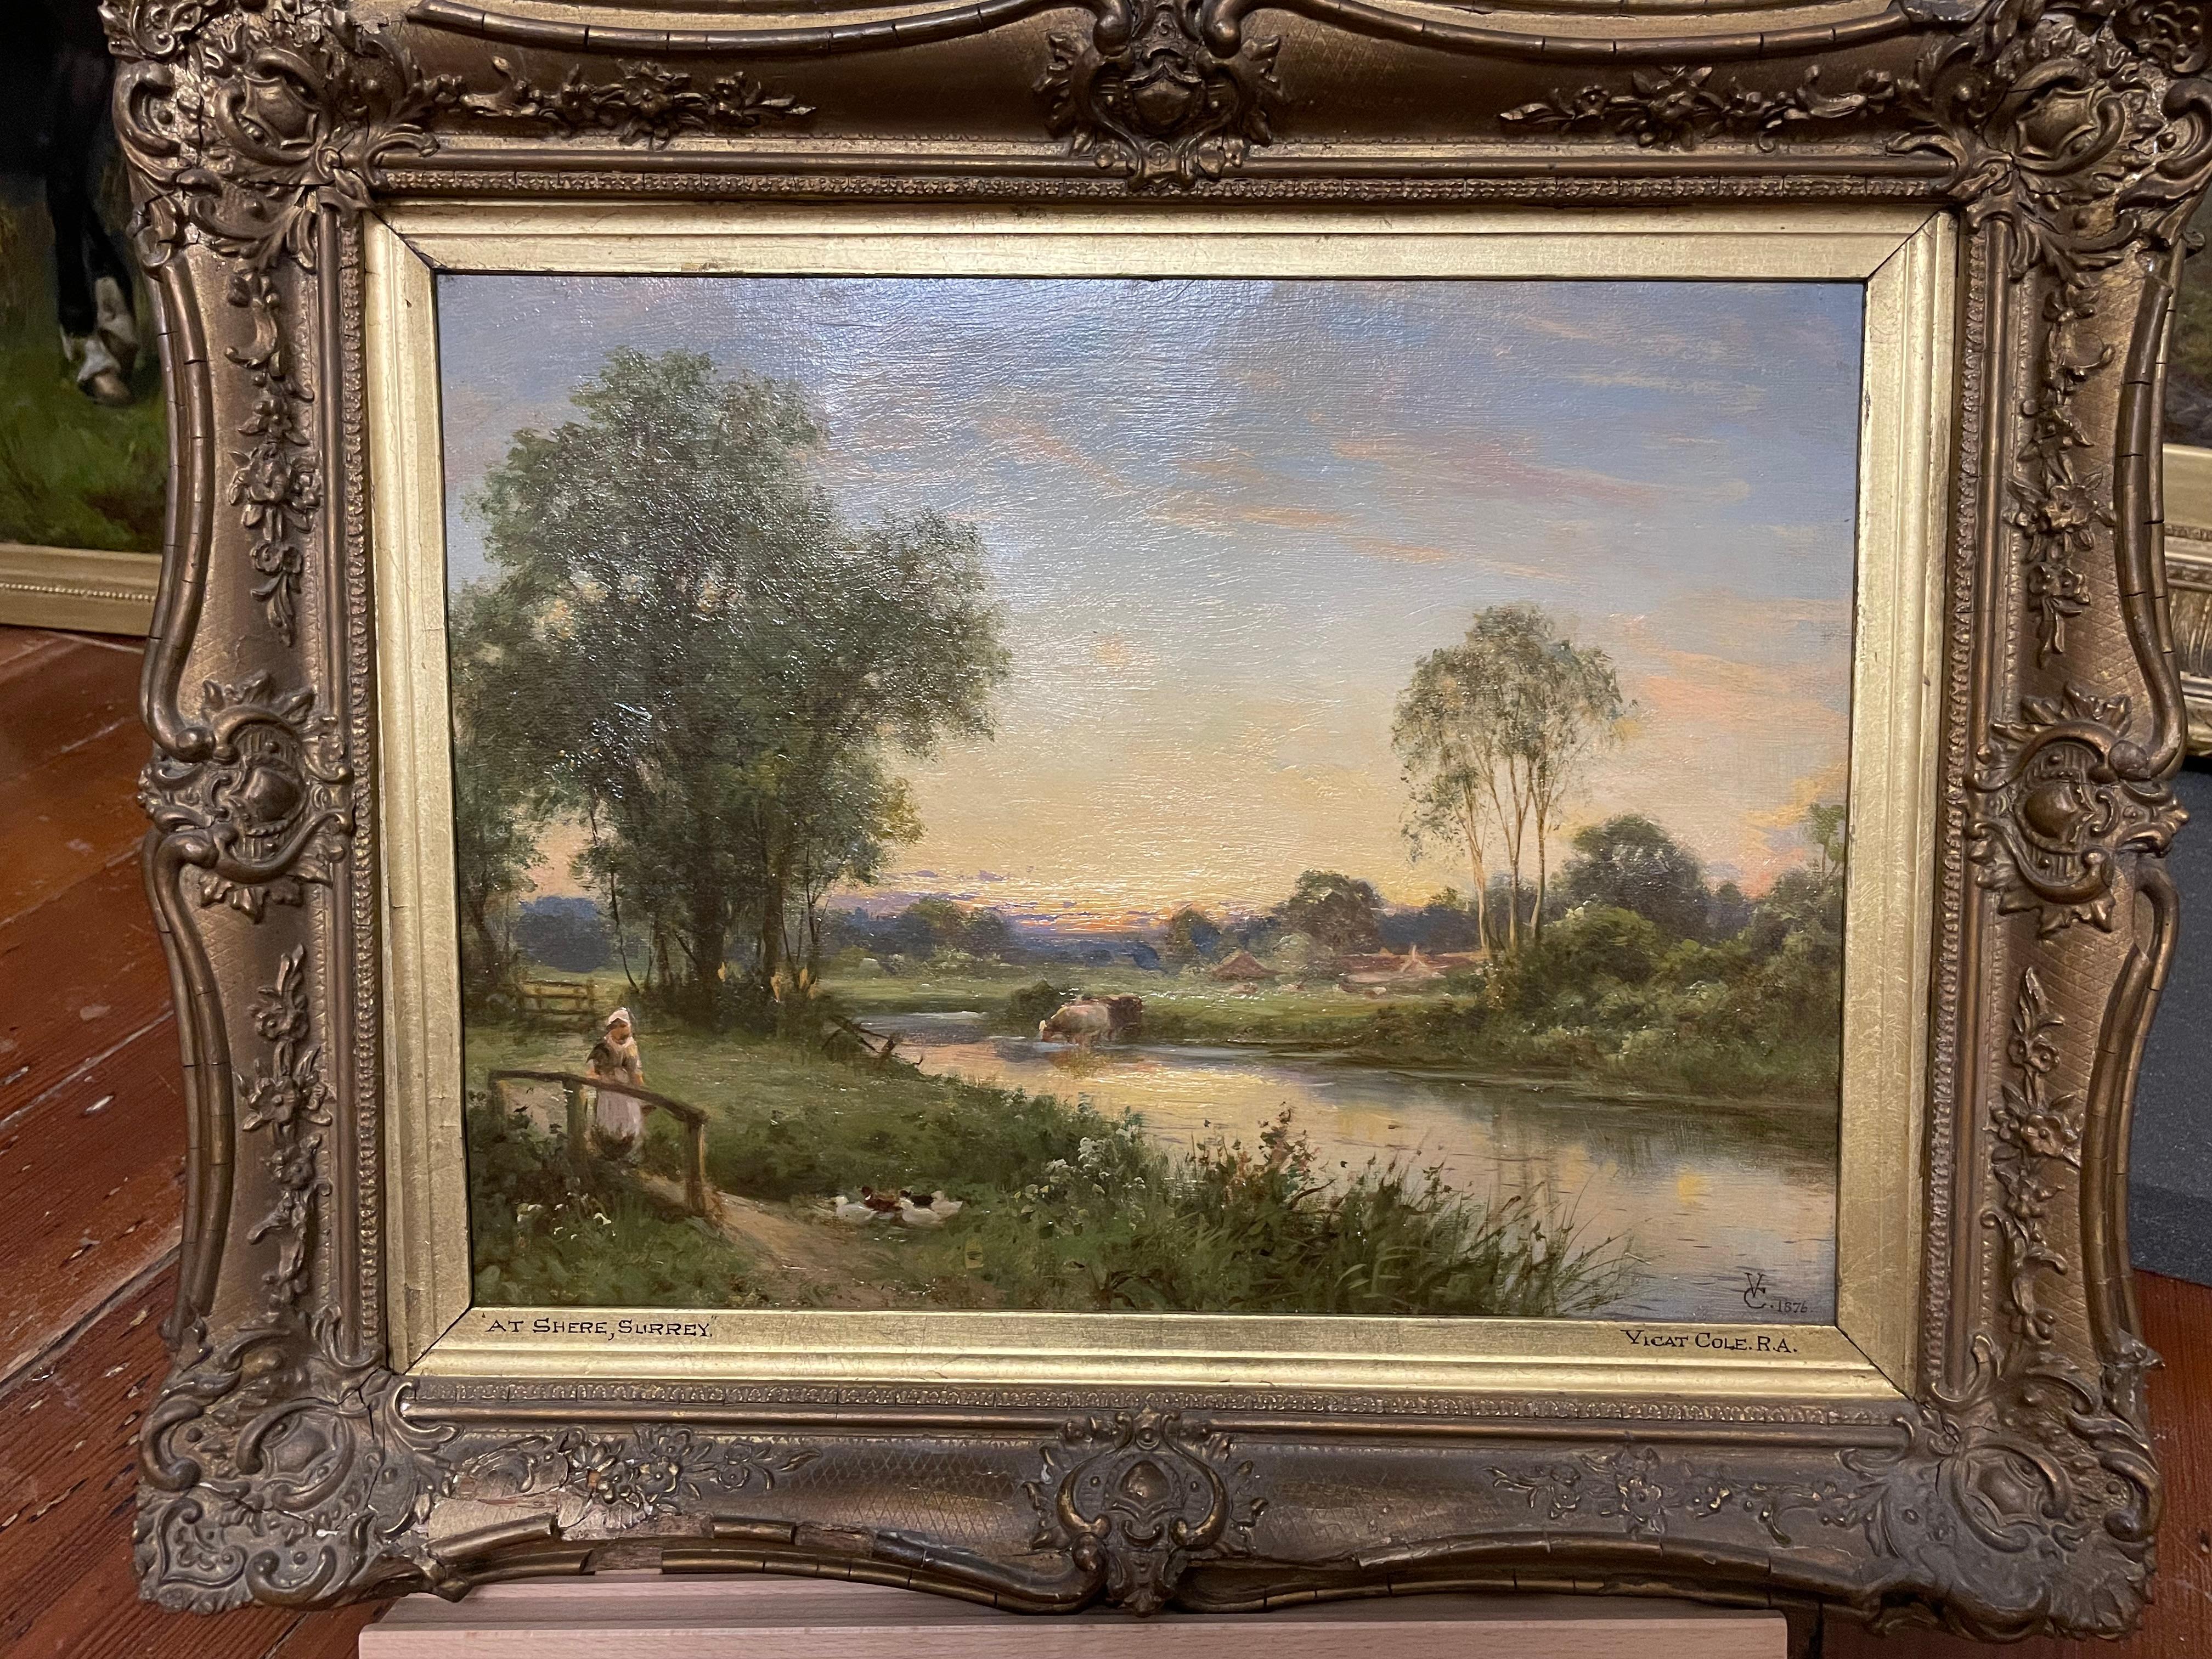 Shere, Surrey, huile sur toile, paysage, 19e siècle - Marron Landscape Painting par George Vicat Cole RA